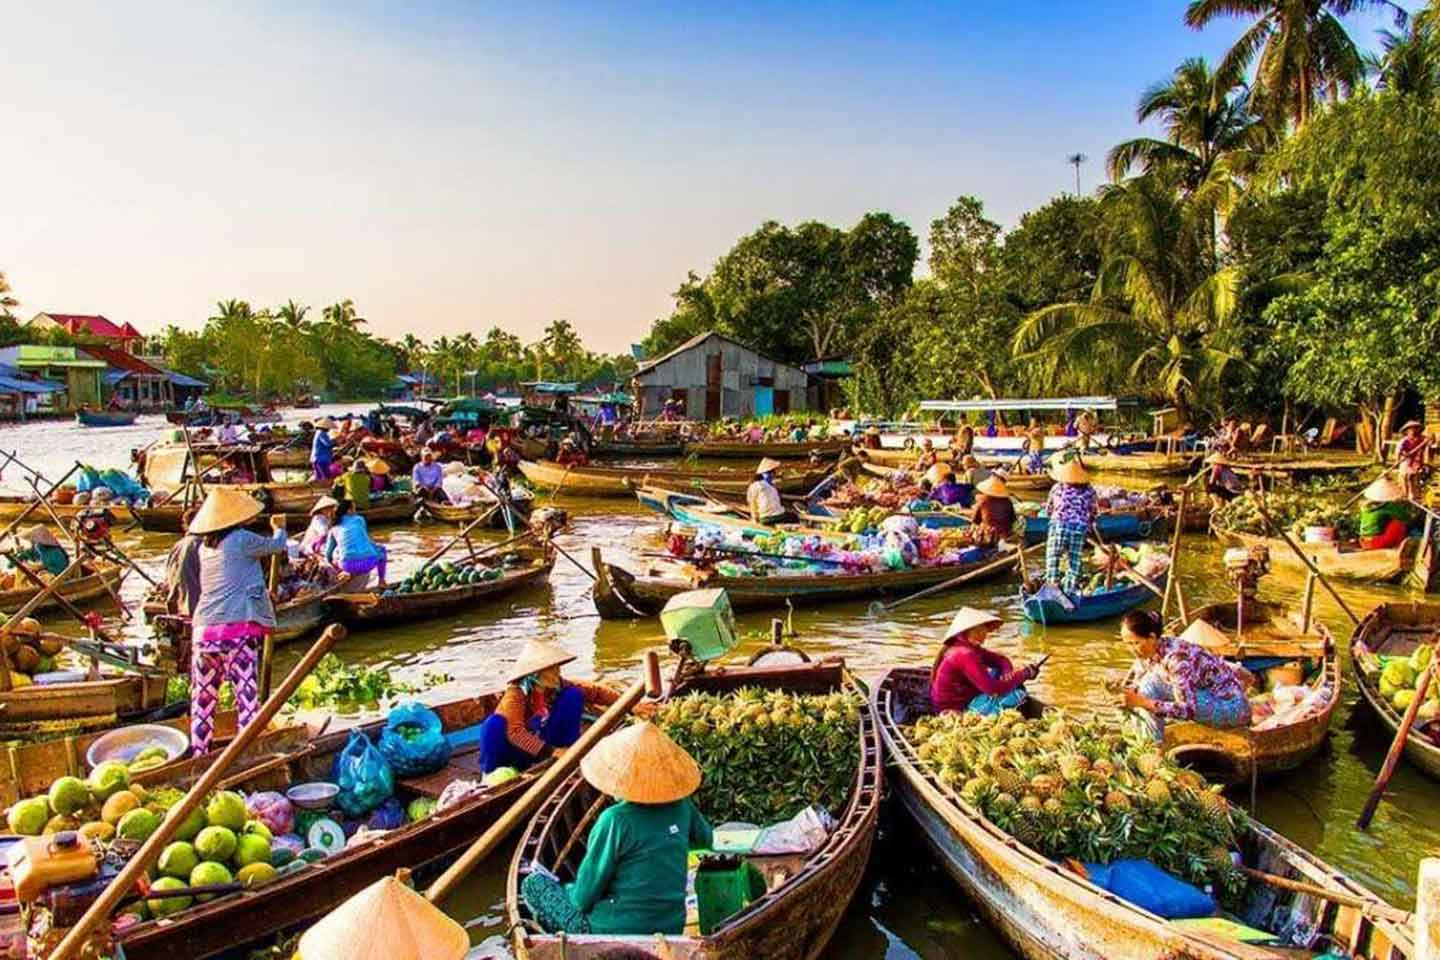 Tiền Giang là một tỉnh ven biển đồng bằng sông Cửu Long